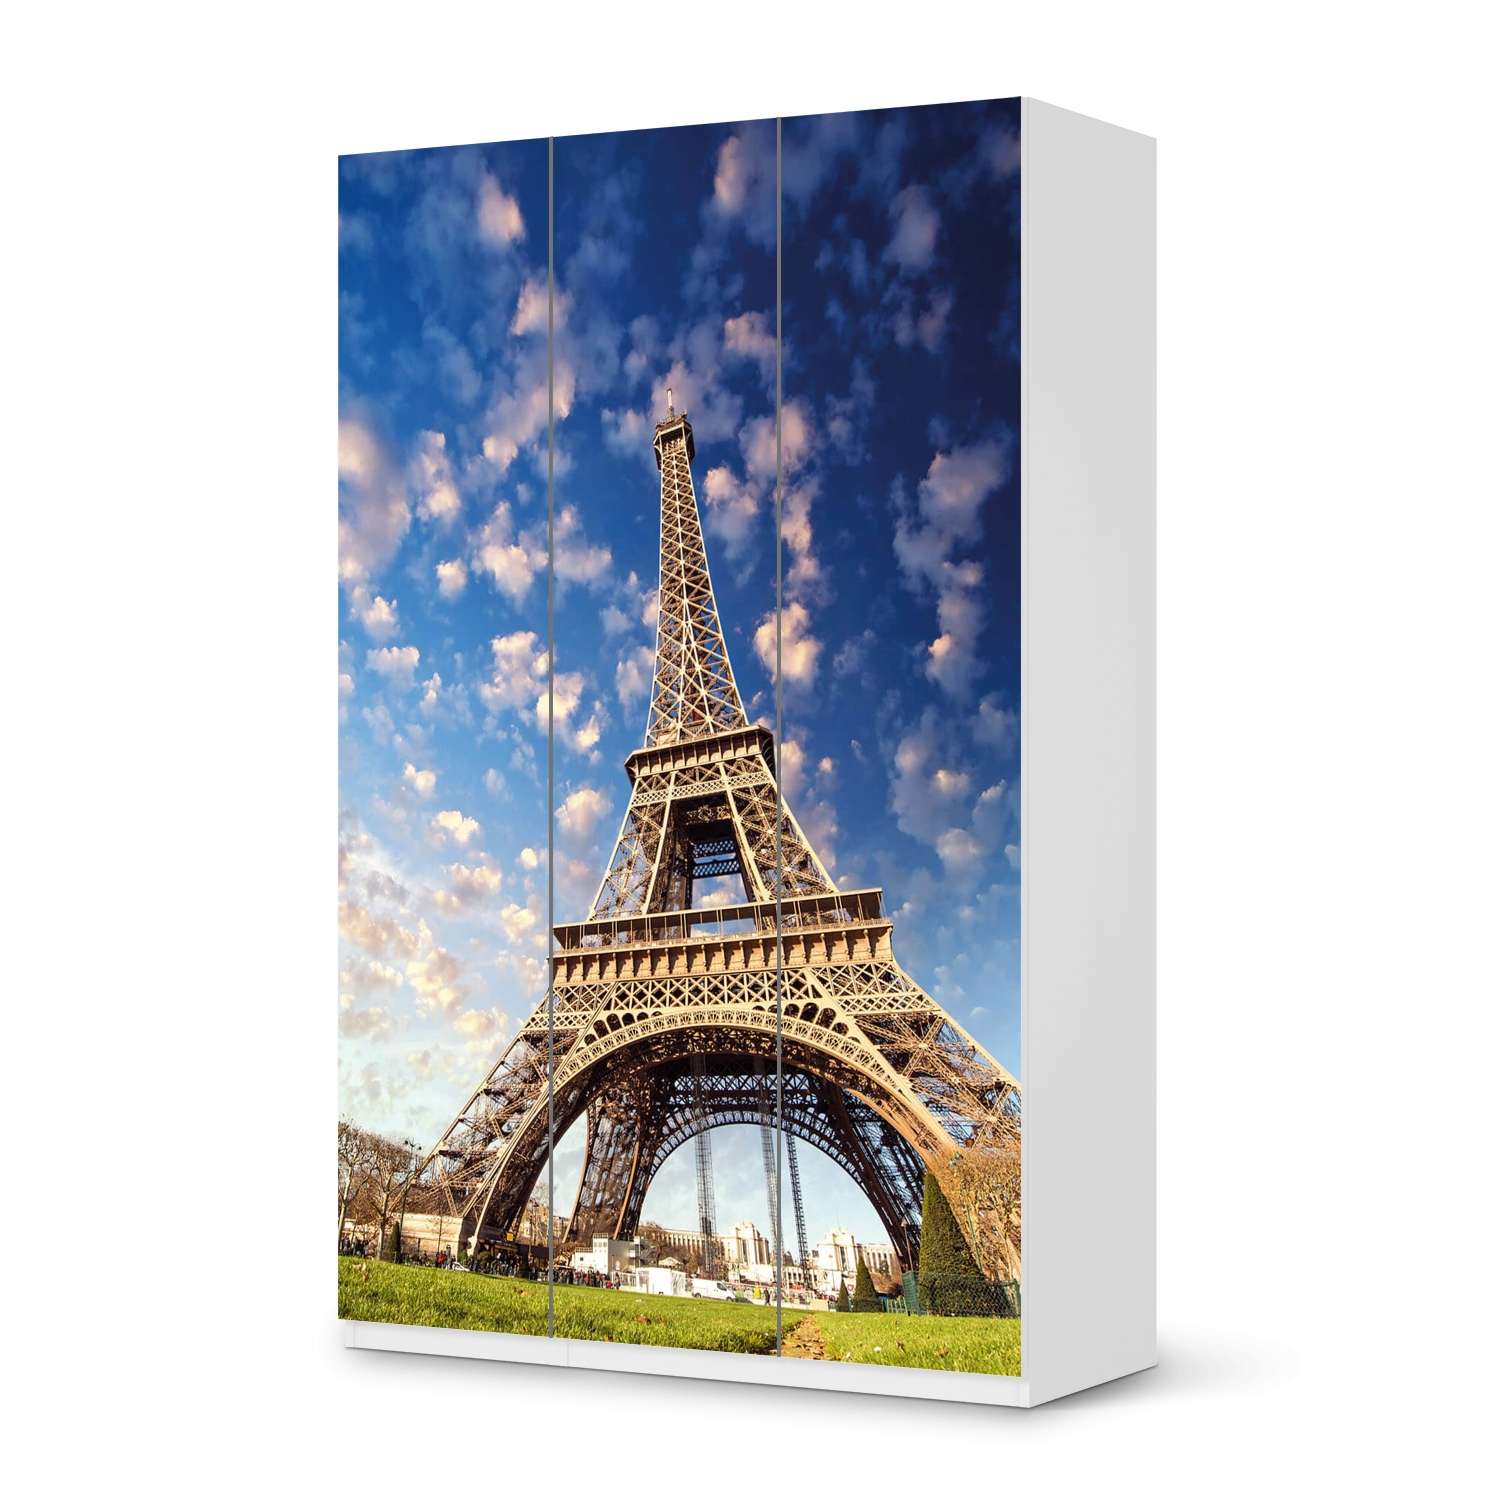 Selbstklebende Folie IKEA Pax Schrank 236 cm H?he - 3 T?ren - Design: La Tour Eiffel von creatisto